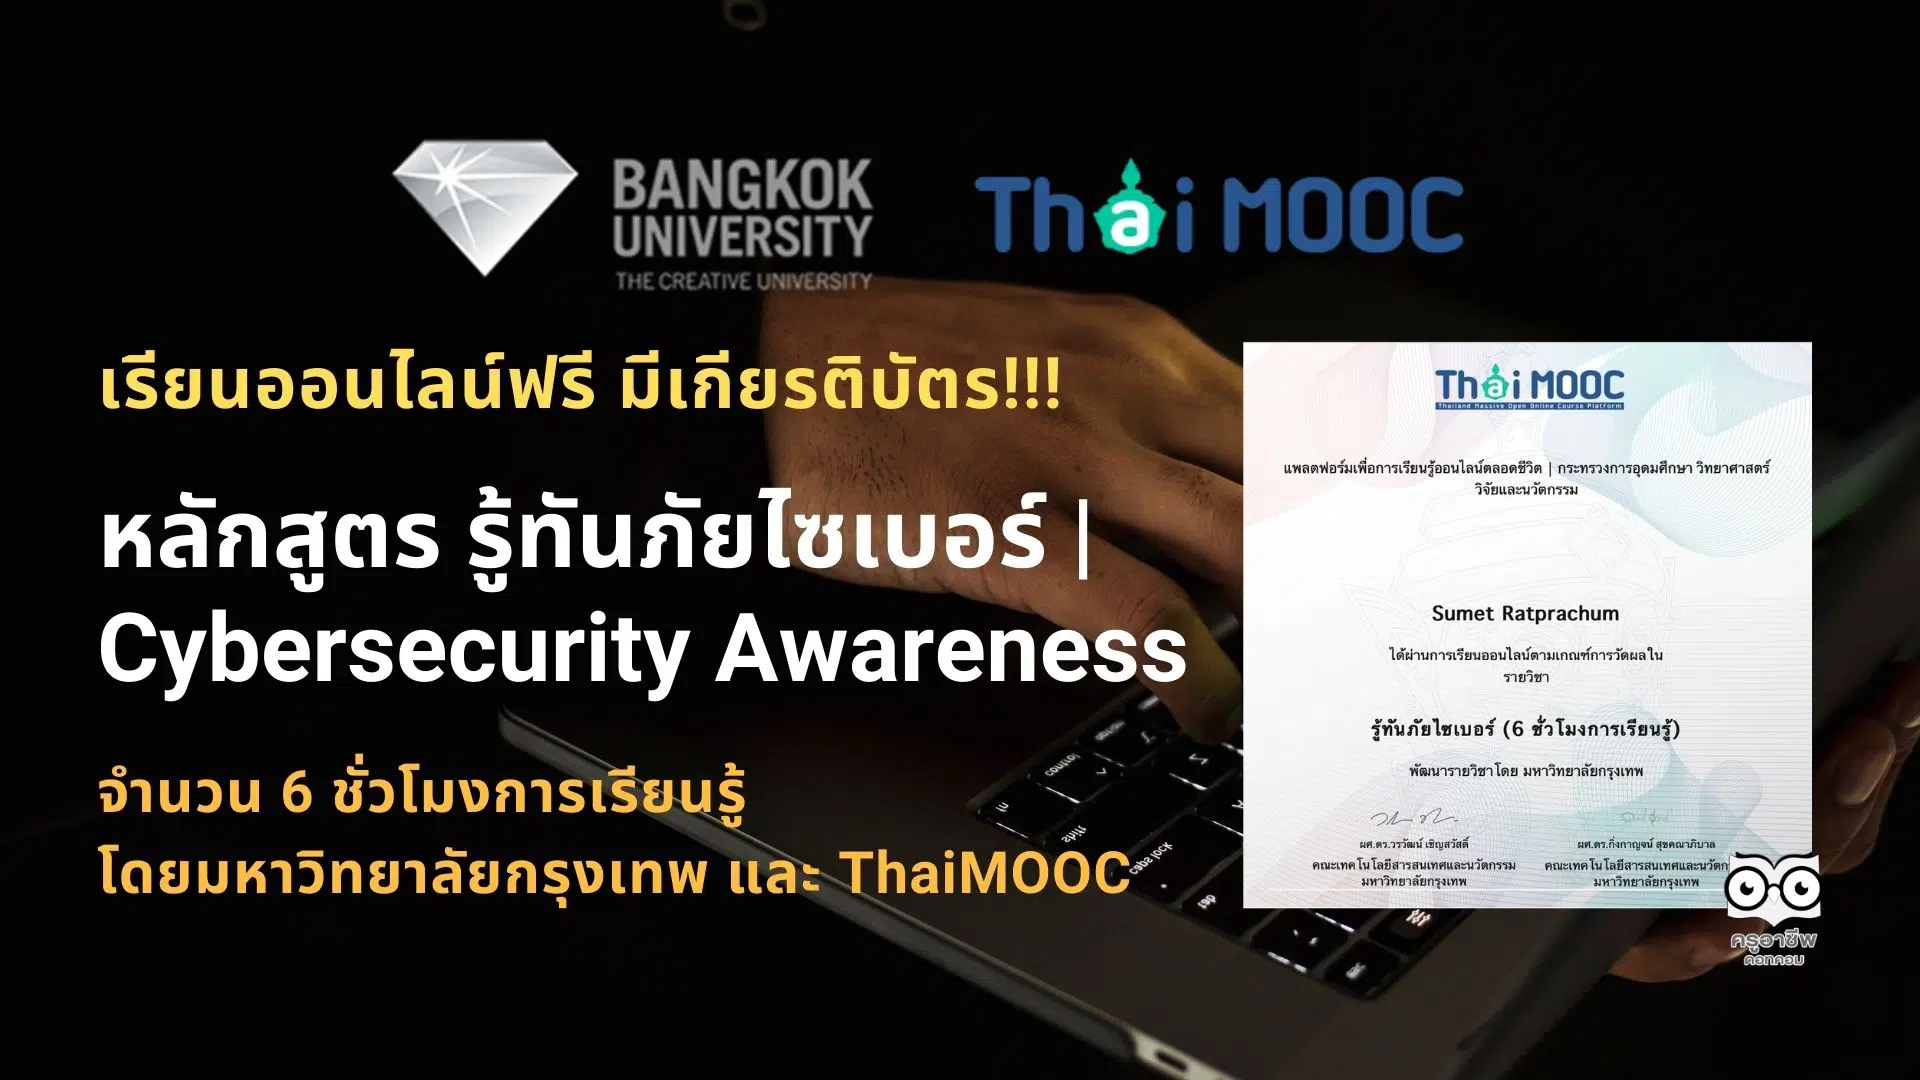 เรียนออนไลน์ฟรี มีเกียรติบัตร หลักสูตร รู้ทันภัยไซเบอร์ | Cybersecurity Awareness จำนวน 6 ชั่วโมง โดยมหาวิทยาลัยกรุงเทพ และ ThaiMOOC